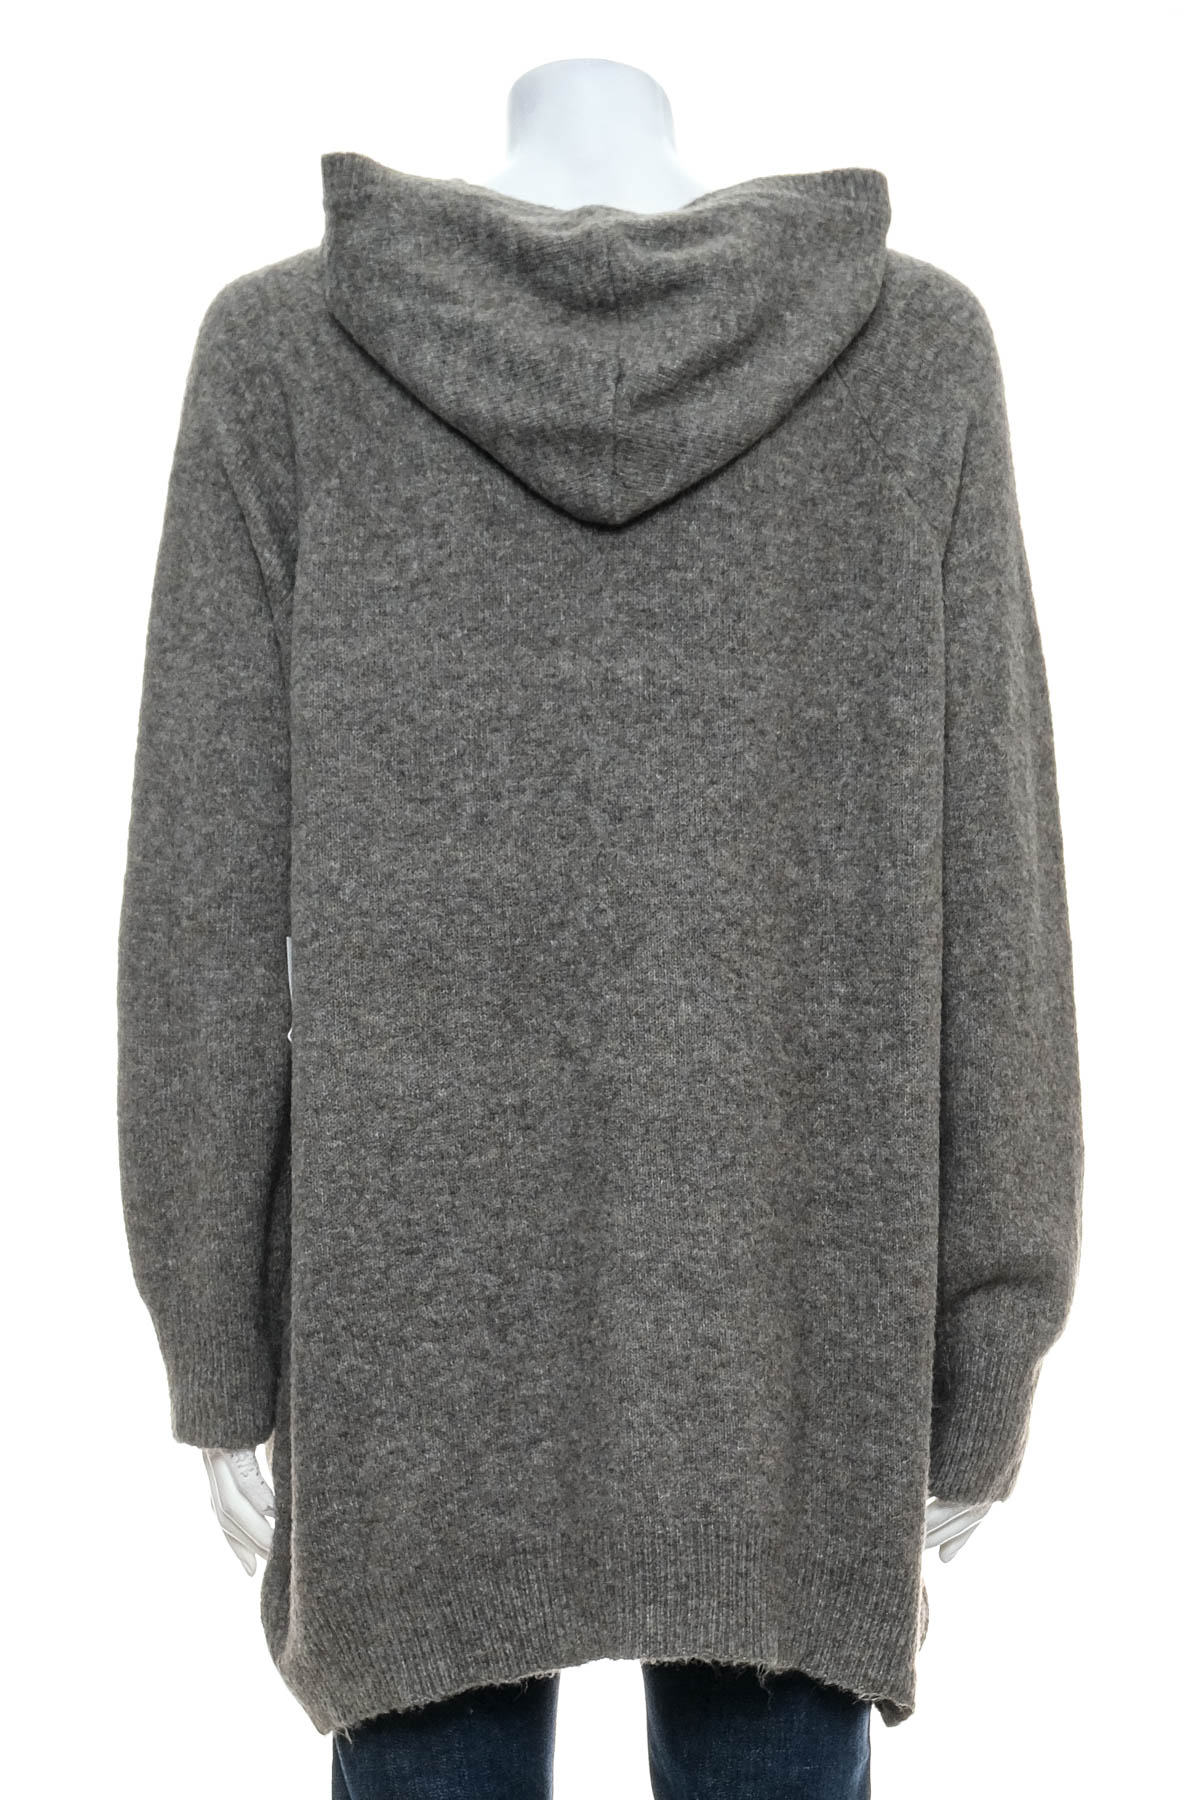 Women's sweater - ASPEN - 1